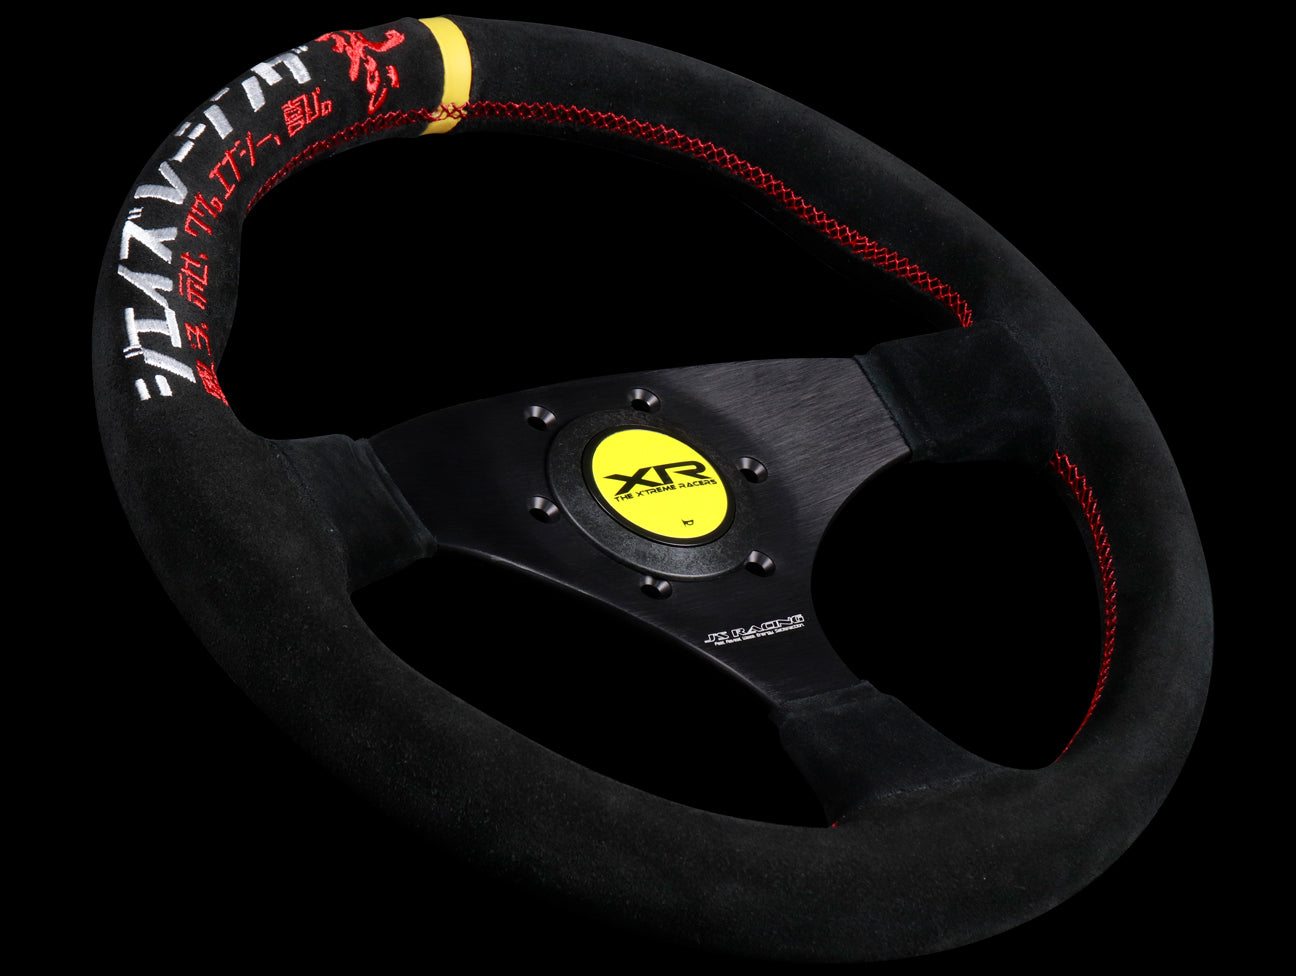 J's Racing XR Steering Wheel Type F Katakana Suede